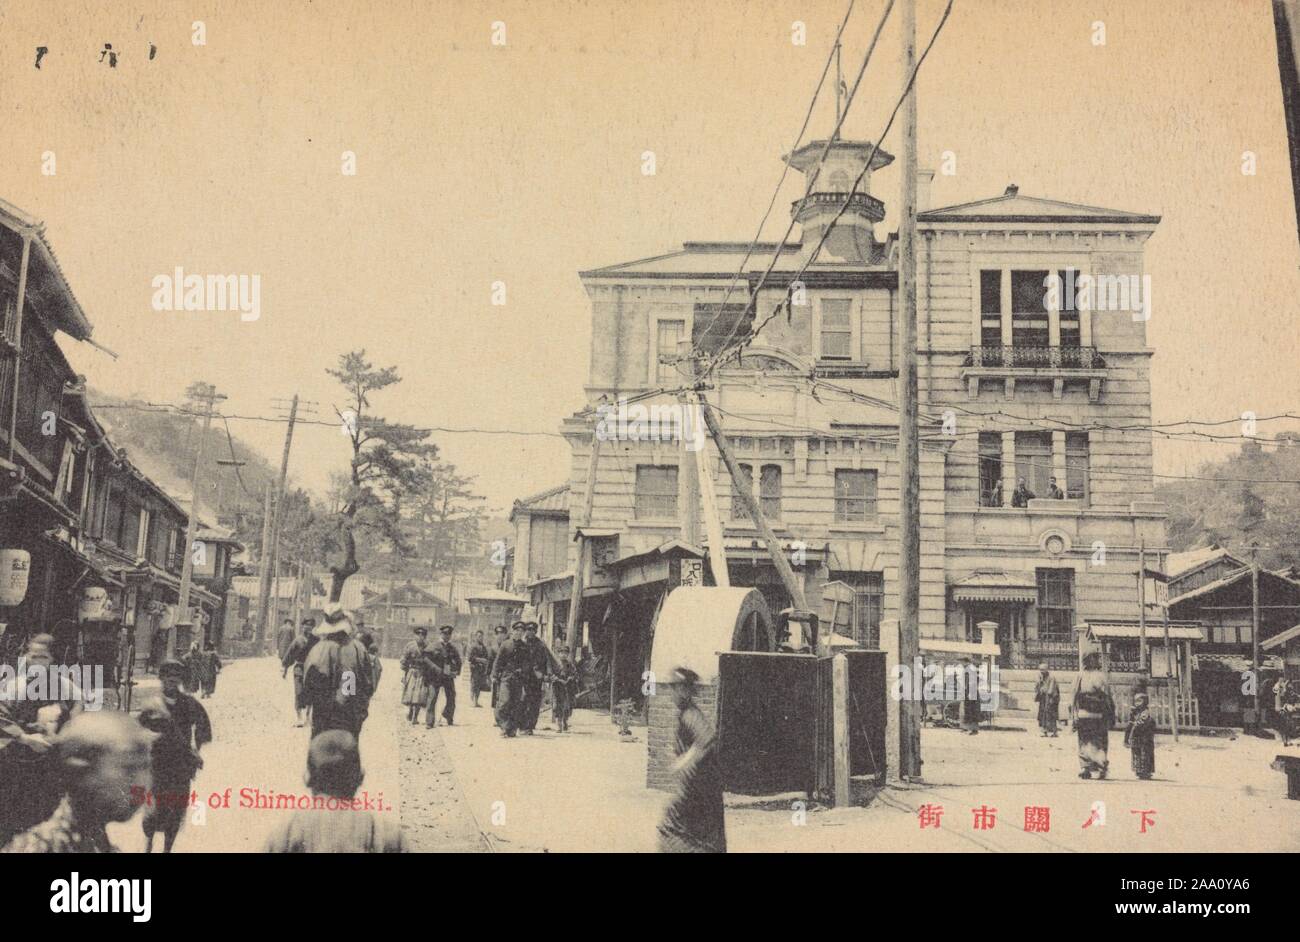 Carte postale monochrome d'une rue animée de la ville de Shimonoseki, préfecture de Yamaguchi, Japon, 1905. À partir de la Bibliothèque publique de New York. () Banque D'Images